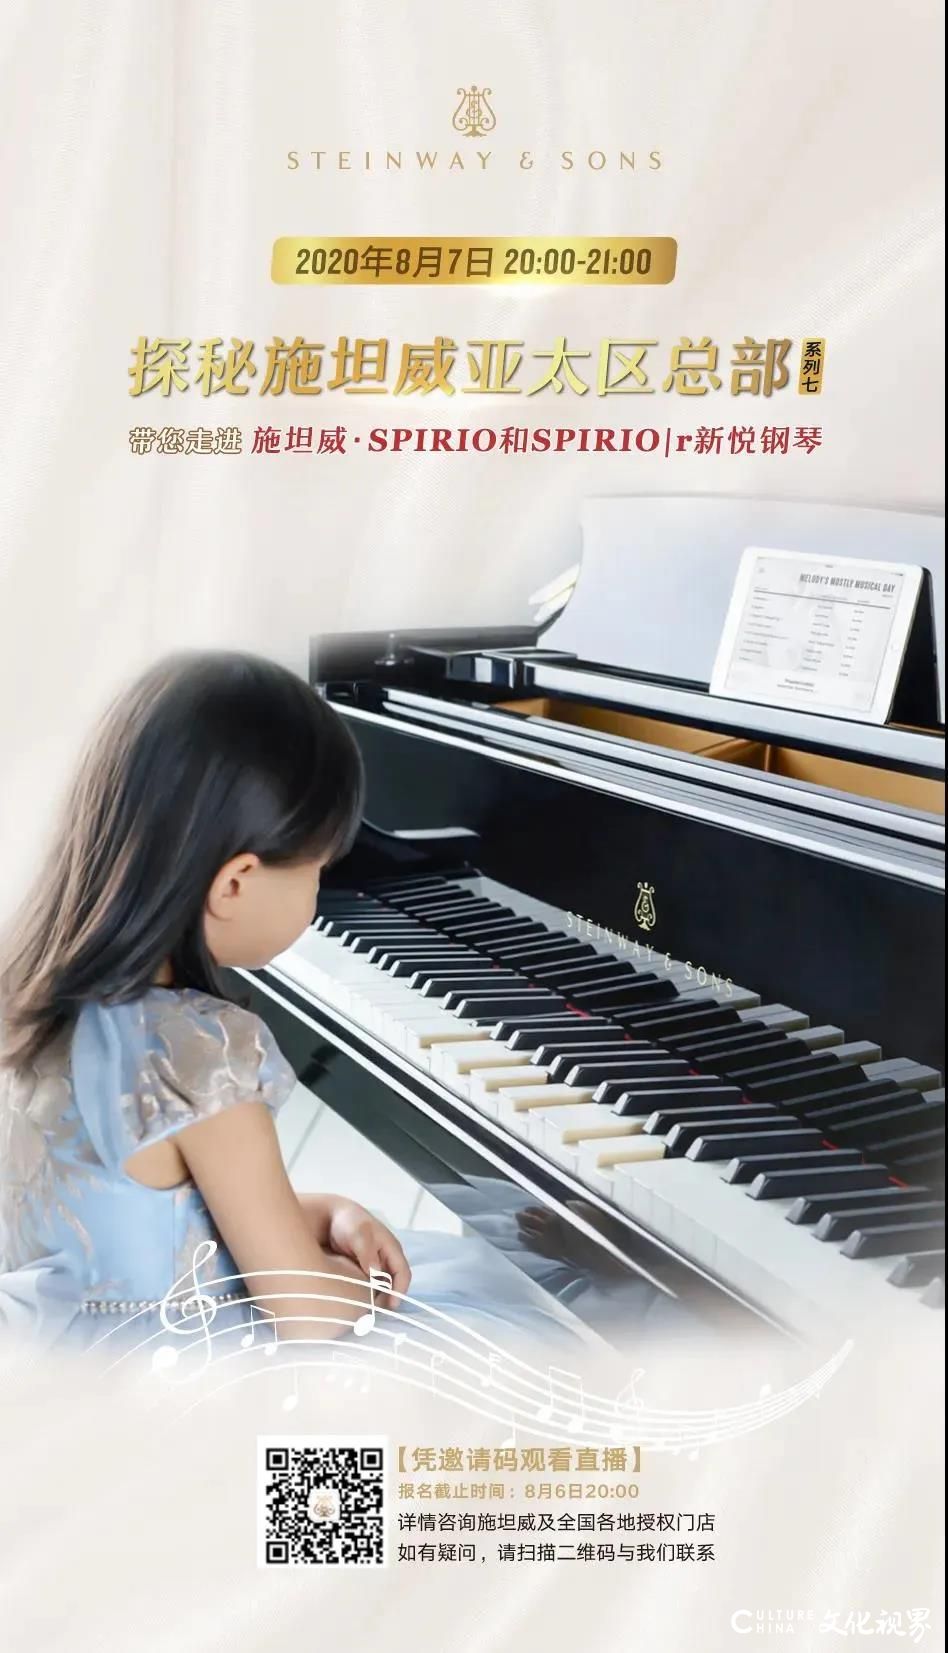 8月7日，新一代“钢琴女王”田佳鑫带你探秘施坦威亚太区总部，感受施坦威·SPIRIO和SPIRIO|r新悦钢琴